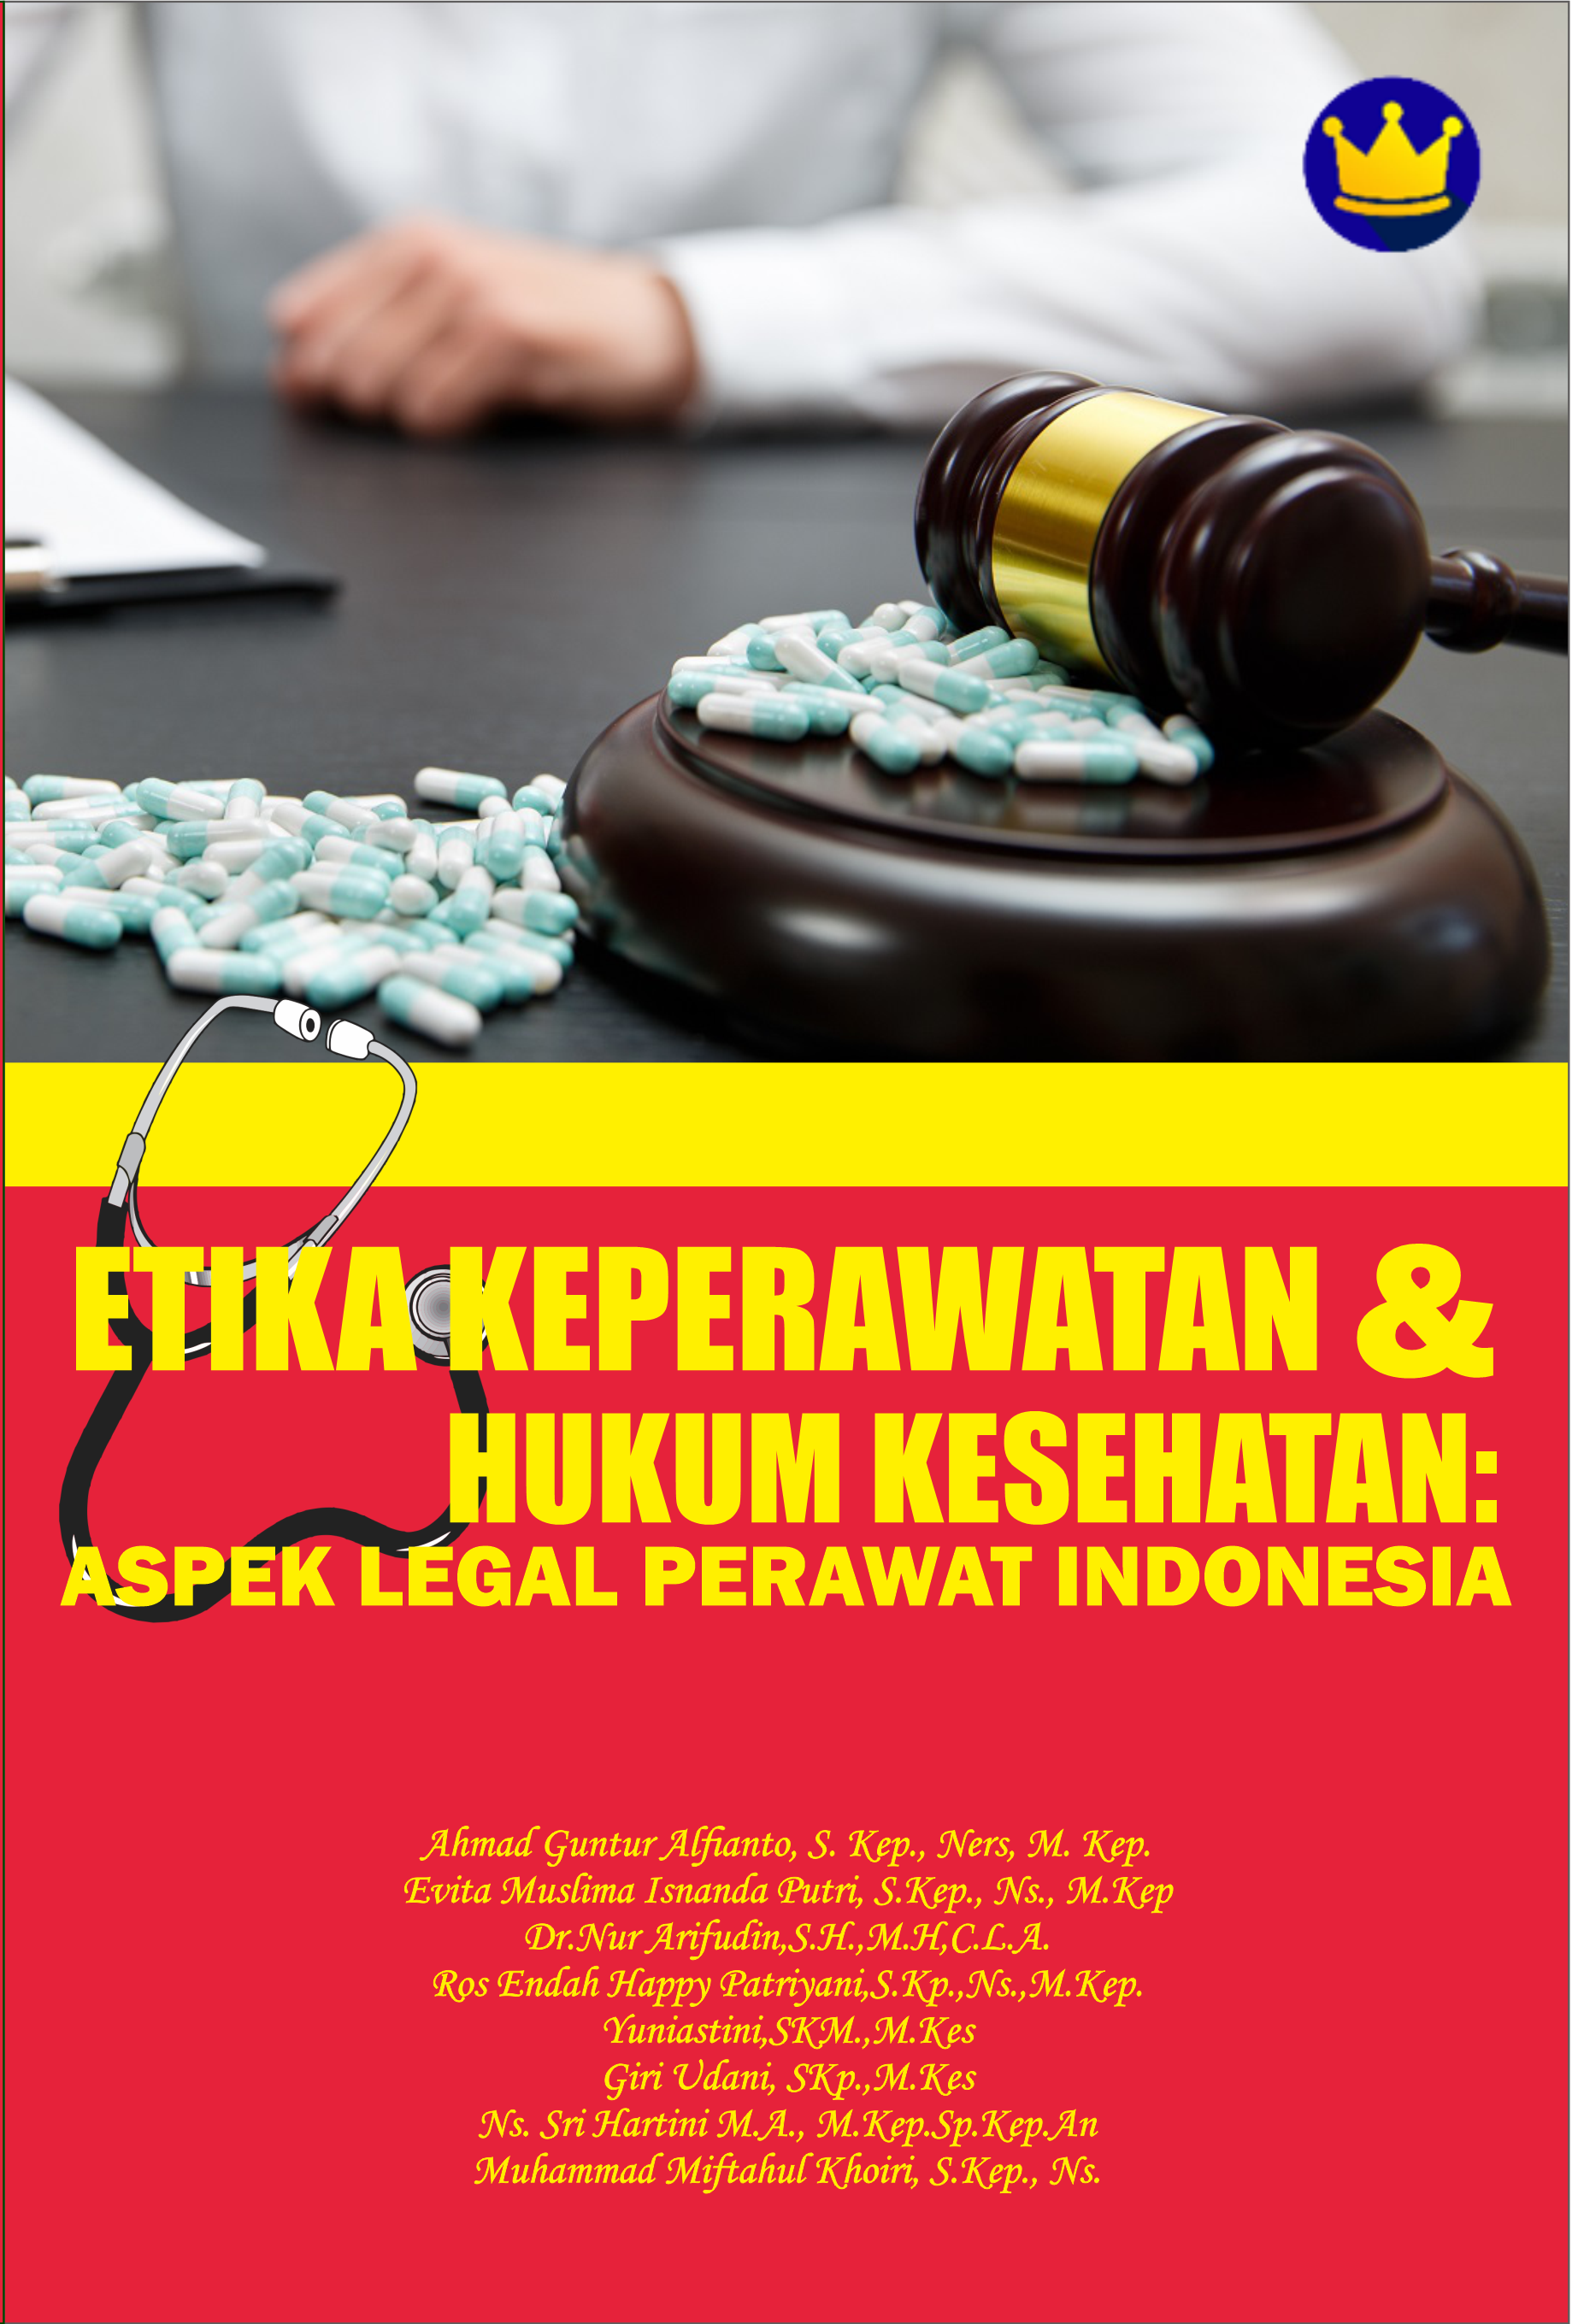 Etika keperawatan & hukum kesehatan: aspek legal perawat Indonesia [sumber elektronis]